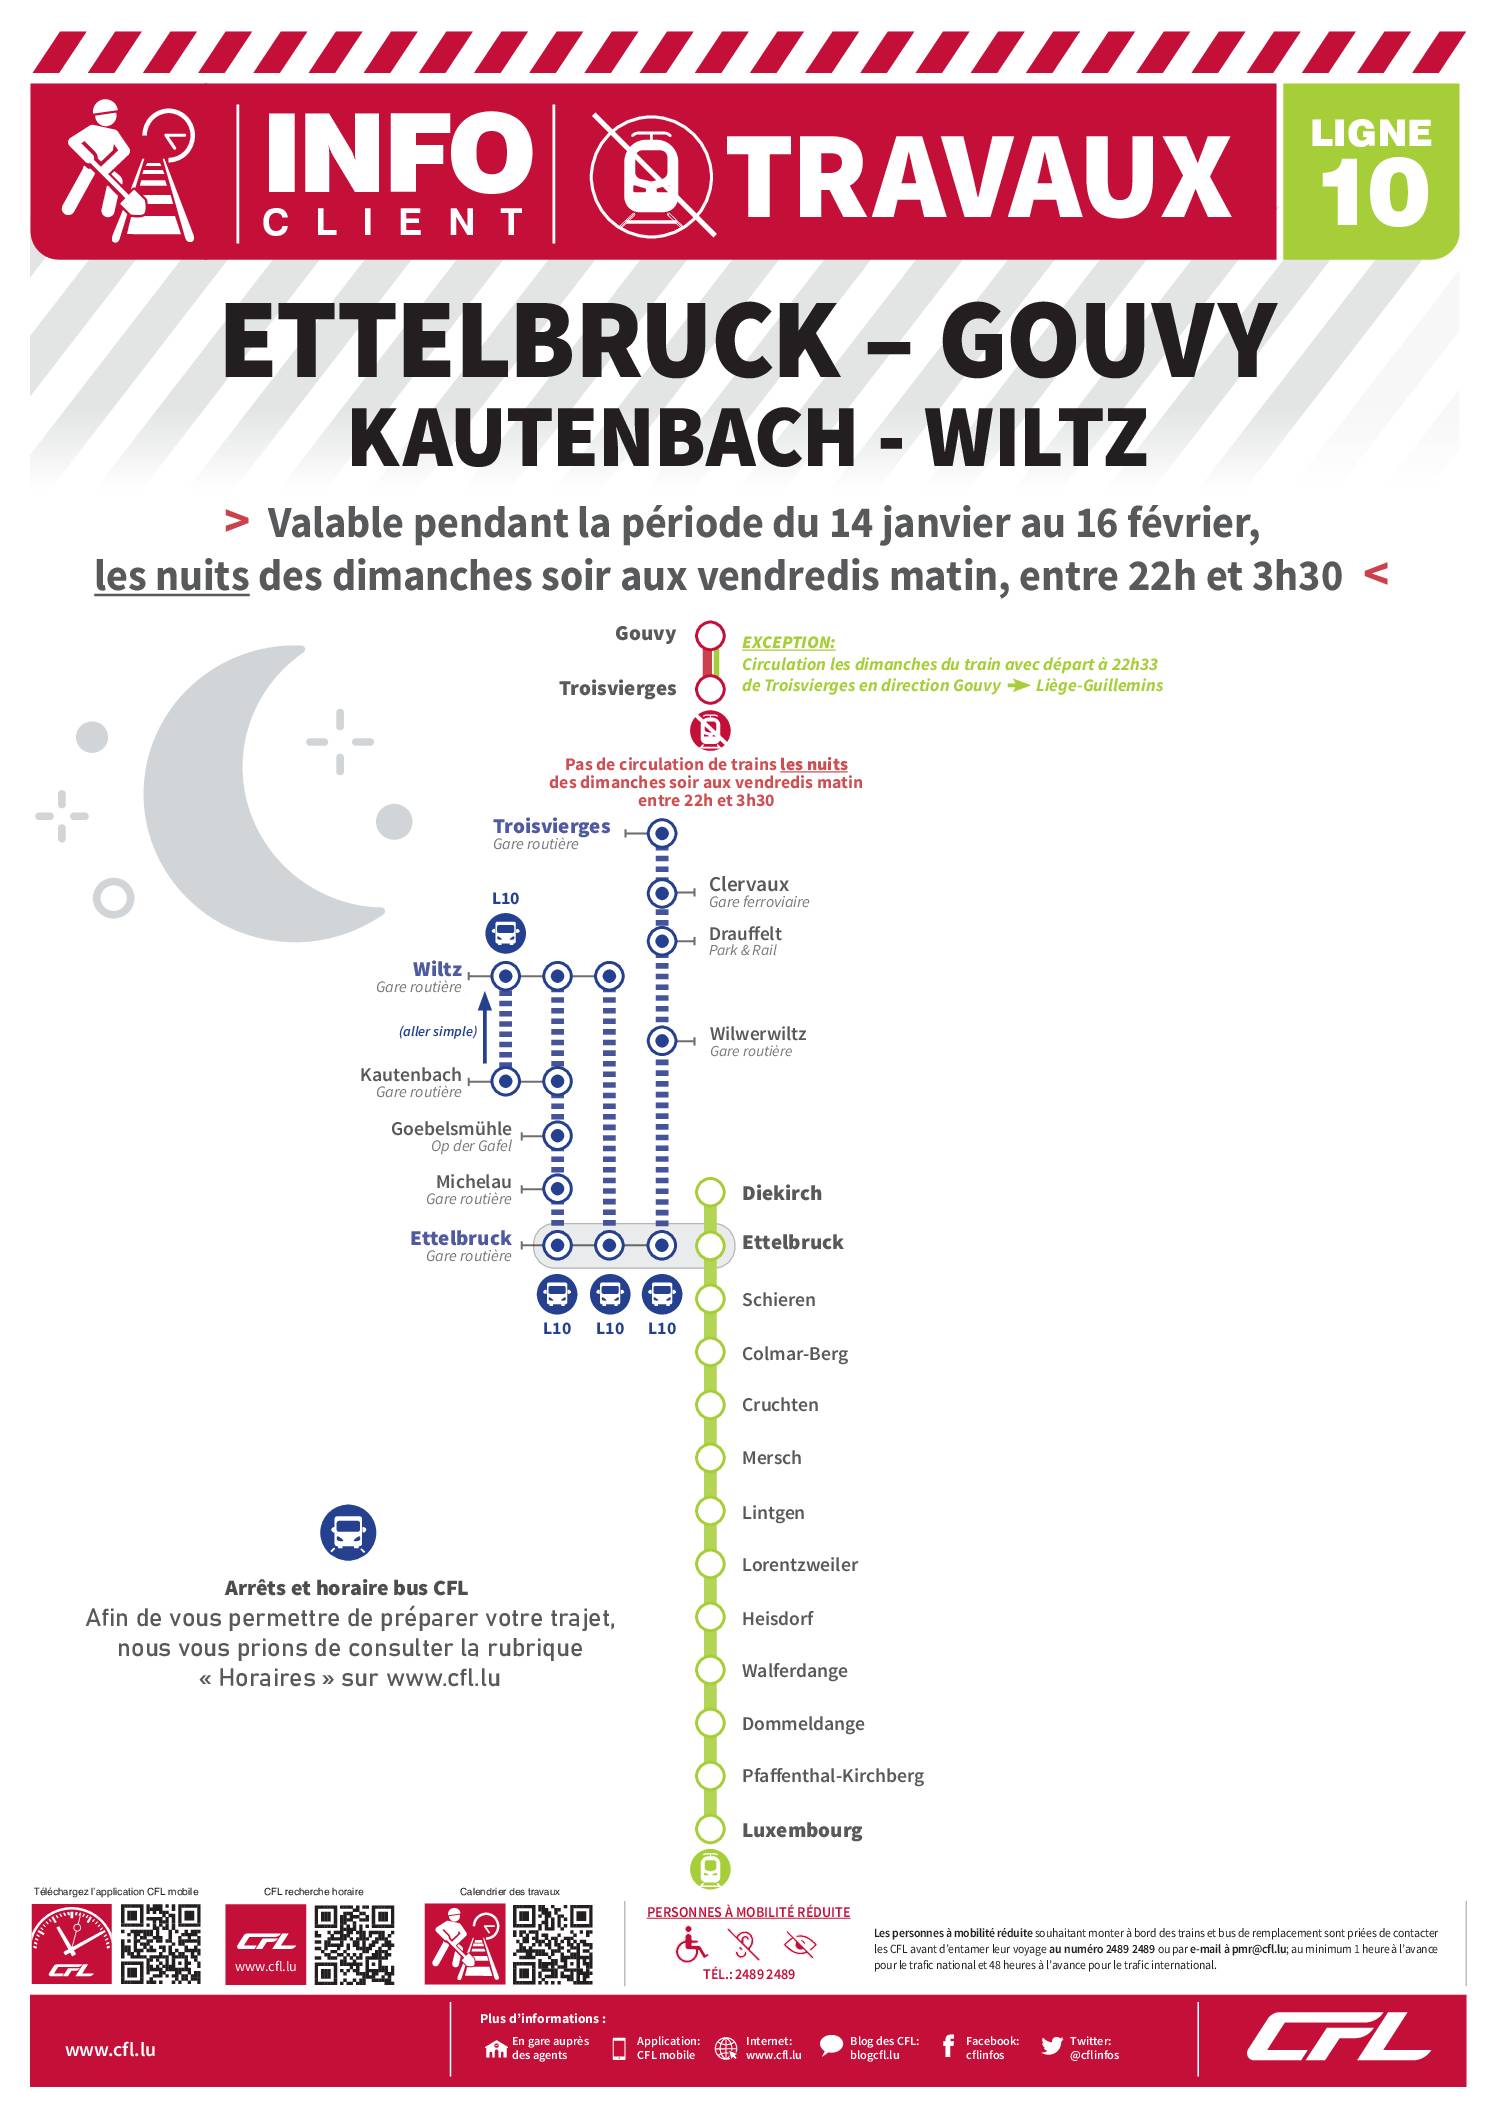 CFL - Info Travaux - Ettelbruck - Gouvy - Travaux de nuit 14 janvier au 16 février entre 22h et 3h30